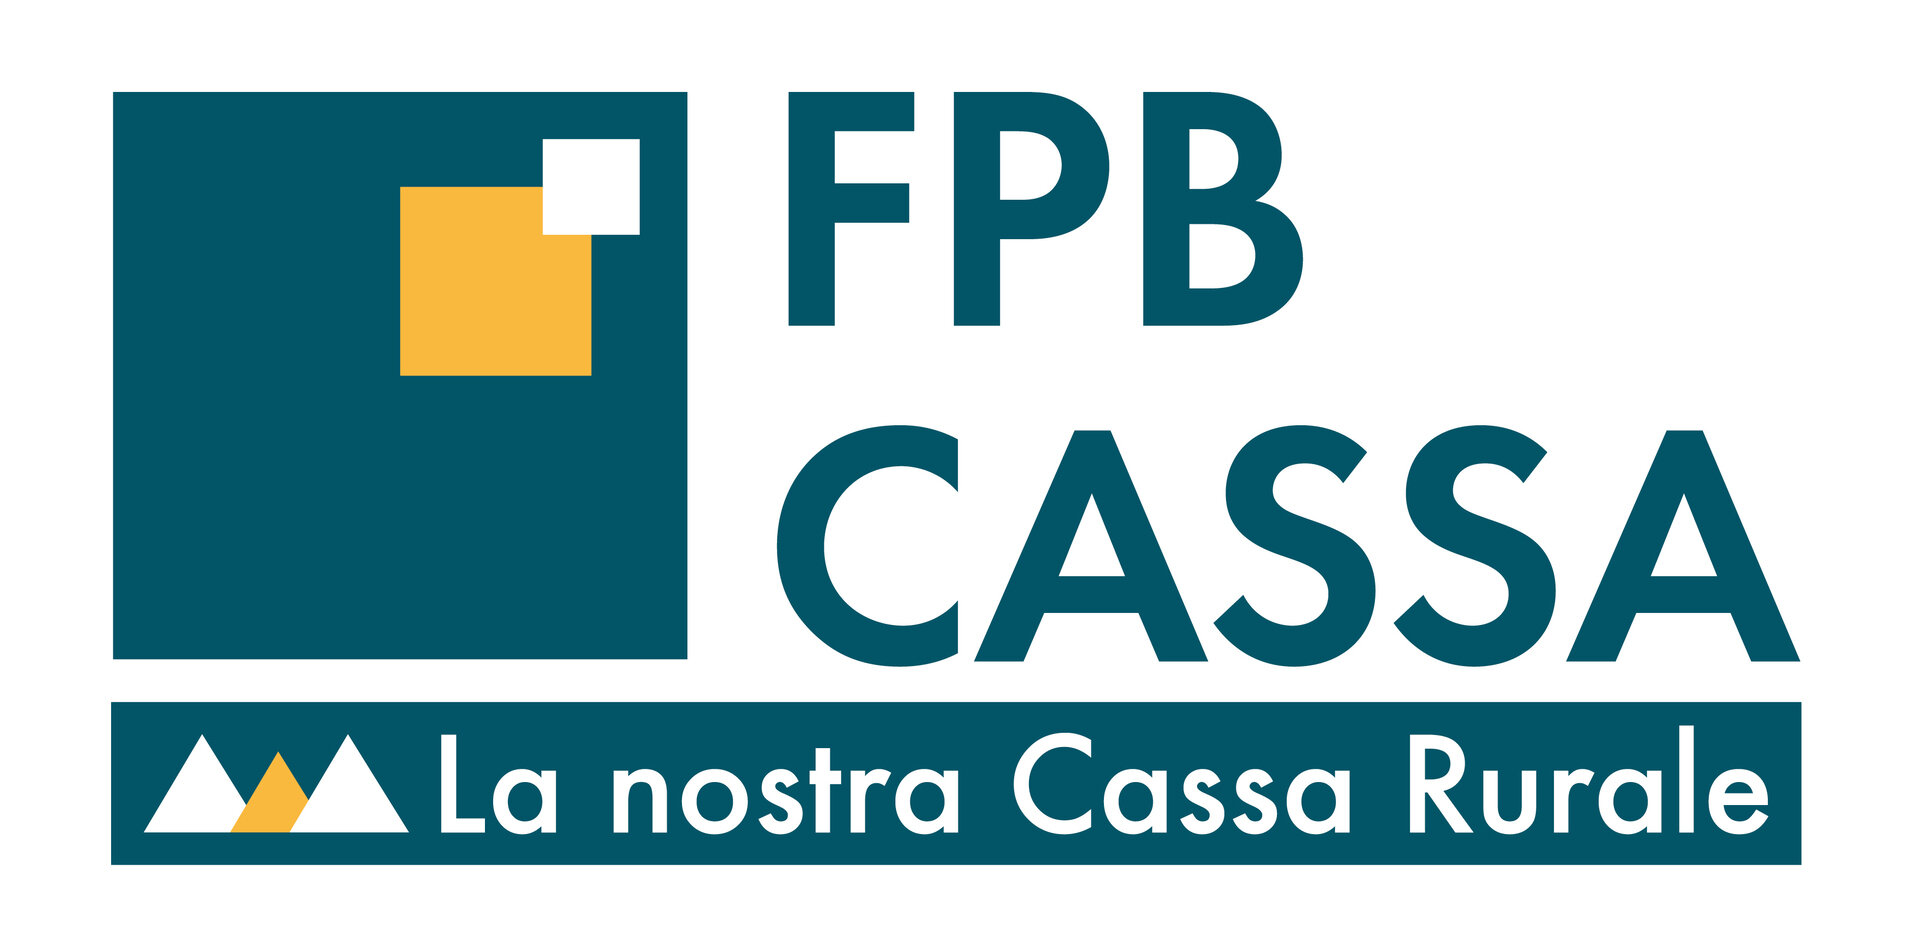 FPB Cassa Di Fassa Primiero Belluno   Branch Office Of Vigo Di Fassa